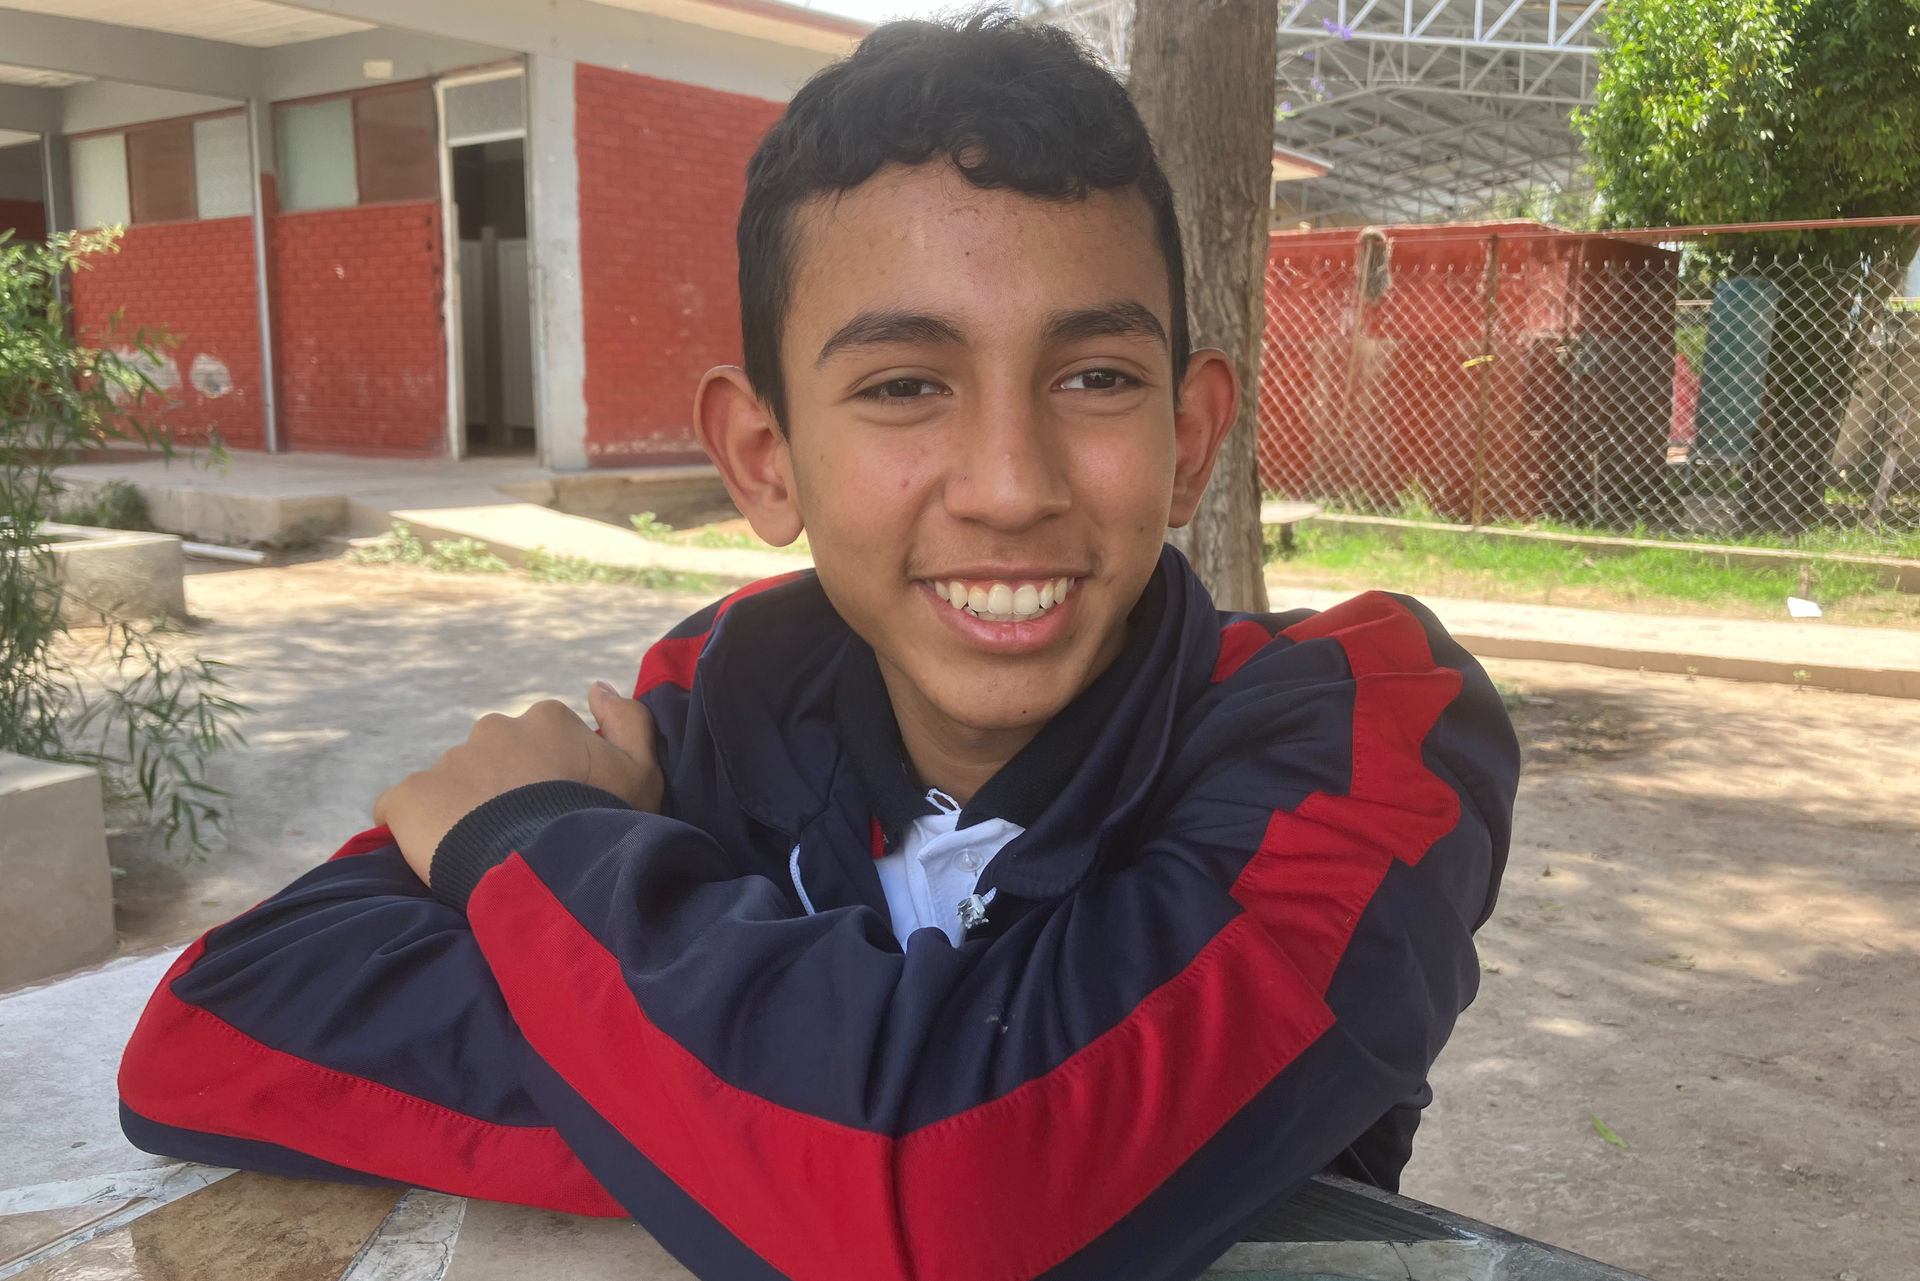  Carlos, el niño de Madero que busca participar en la Olimpiada Mexicana de Matemáticas